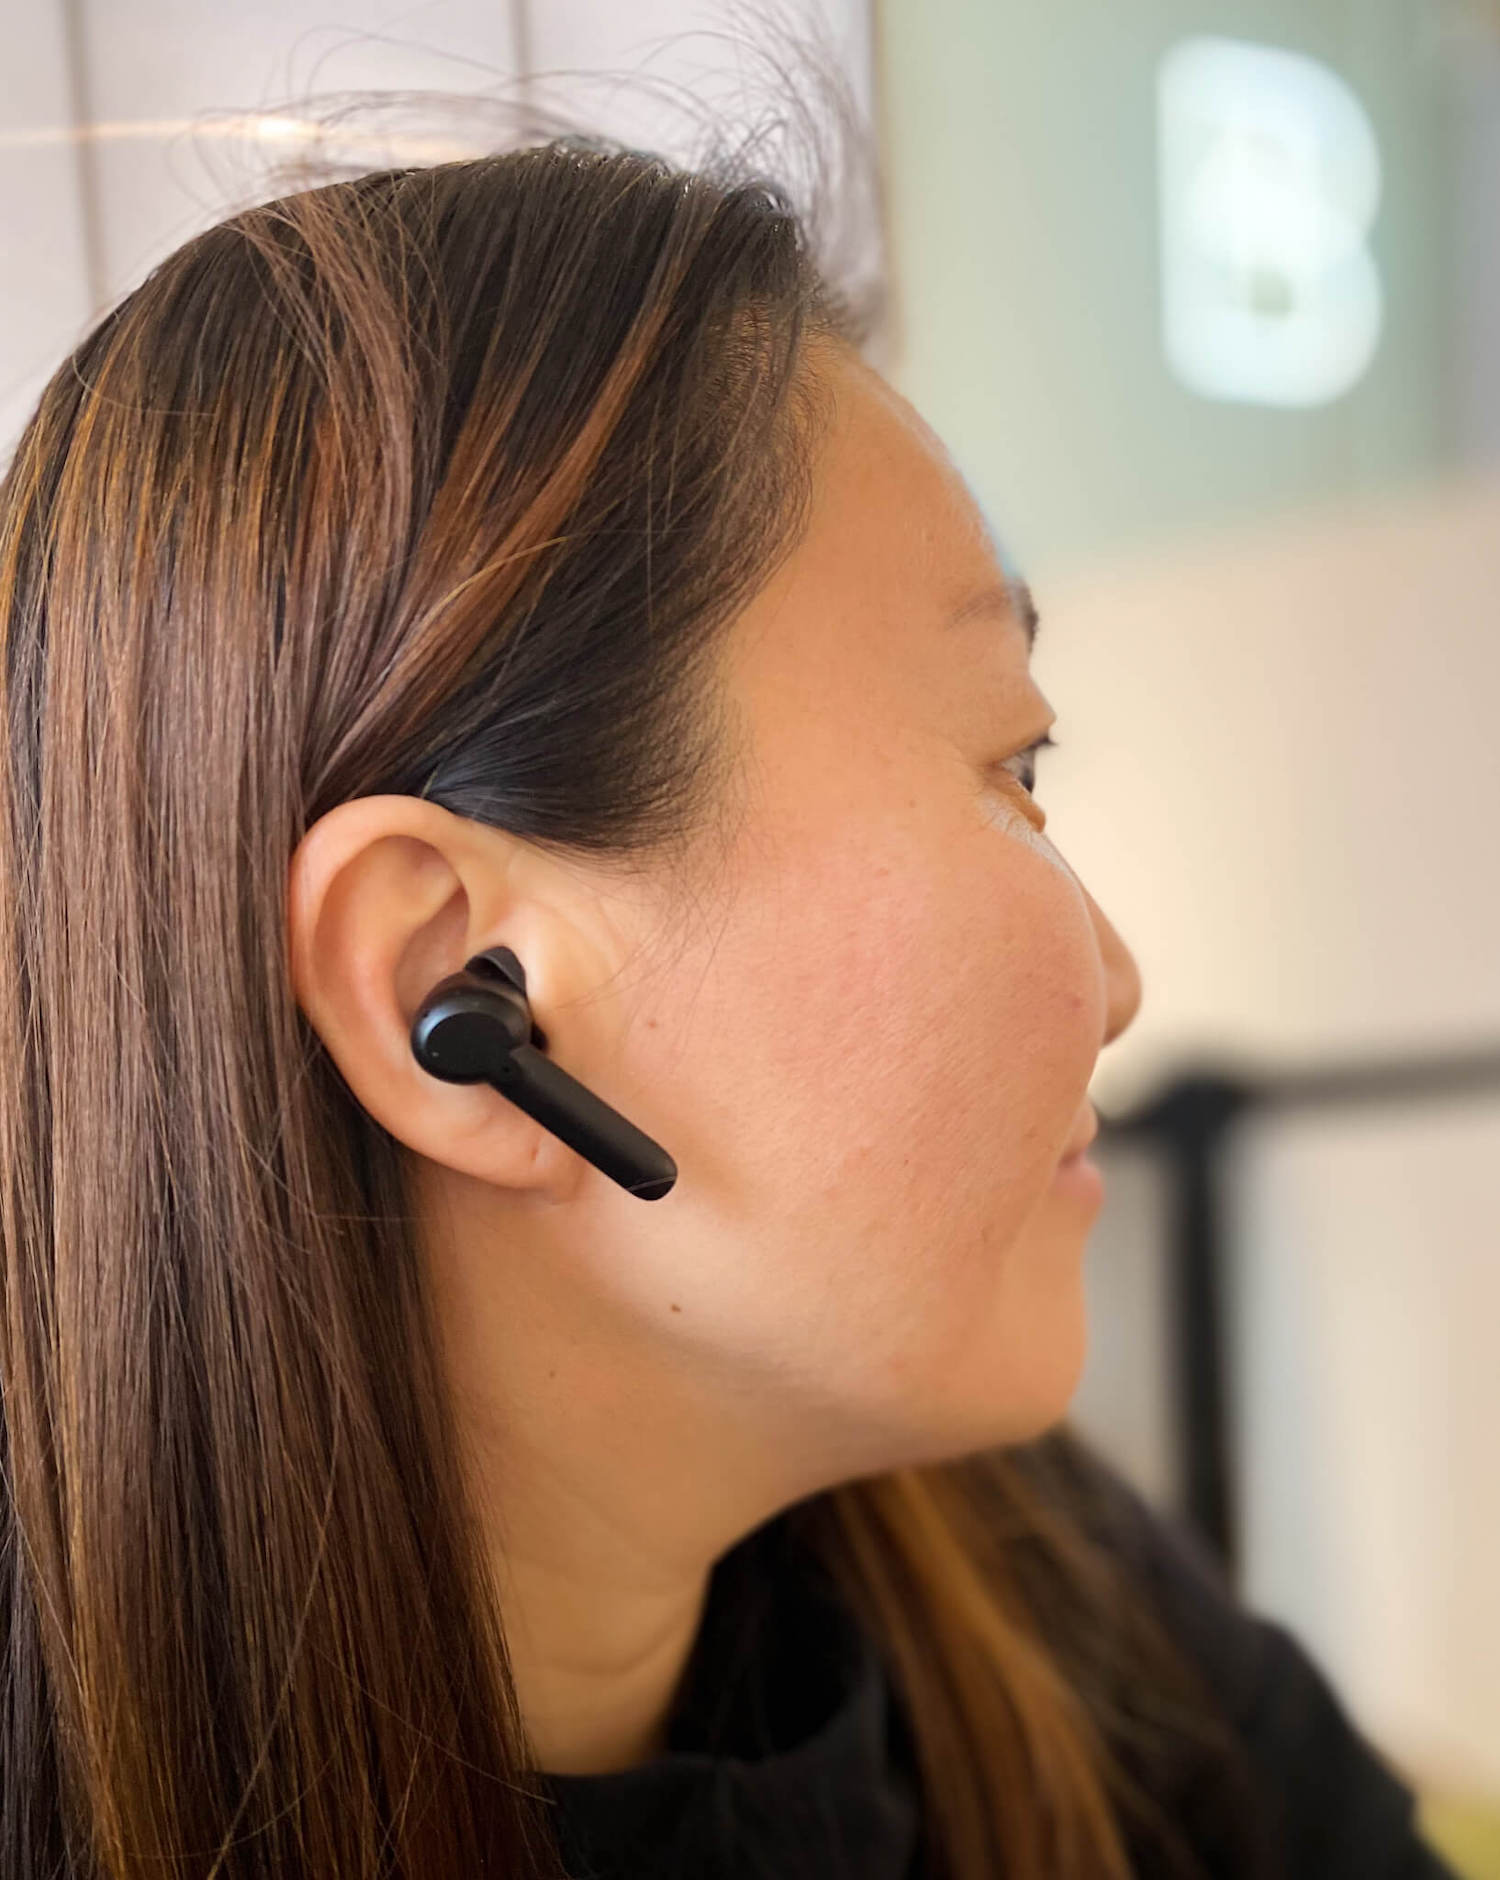 xFyro girl wearing ANC Pro wireless earbuds